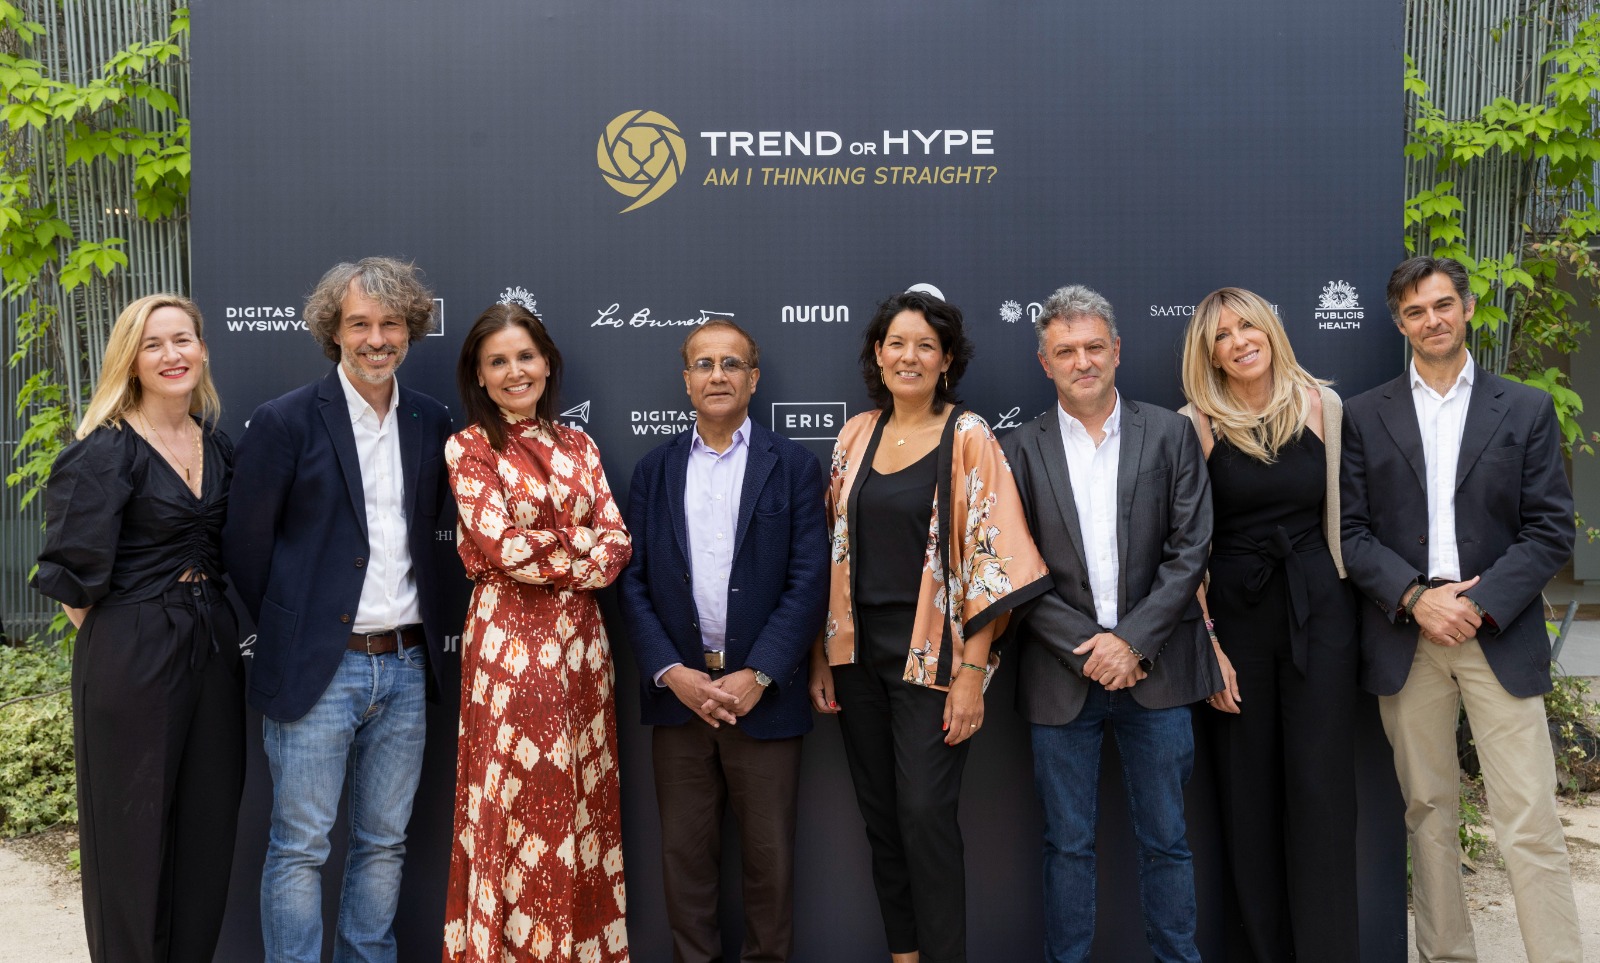 Publicis Groupe presentó su proyecto Trend or Hype en un evento al que acudieron más de 200 asistentes, entre expertos internacionales, clientes y partners